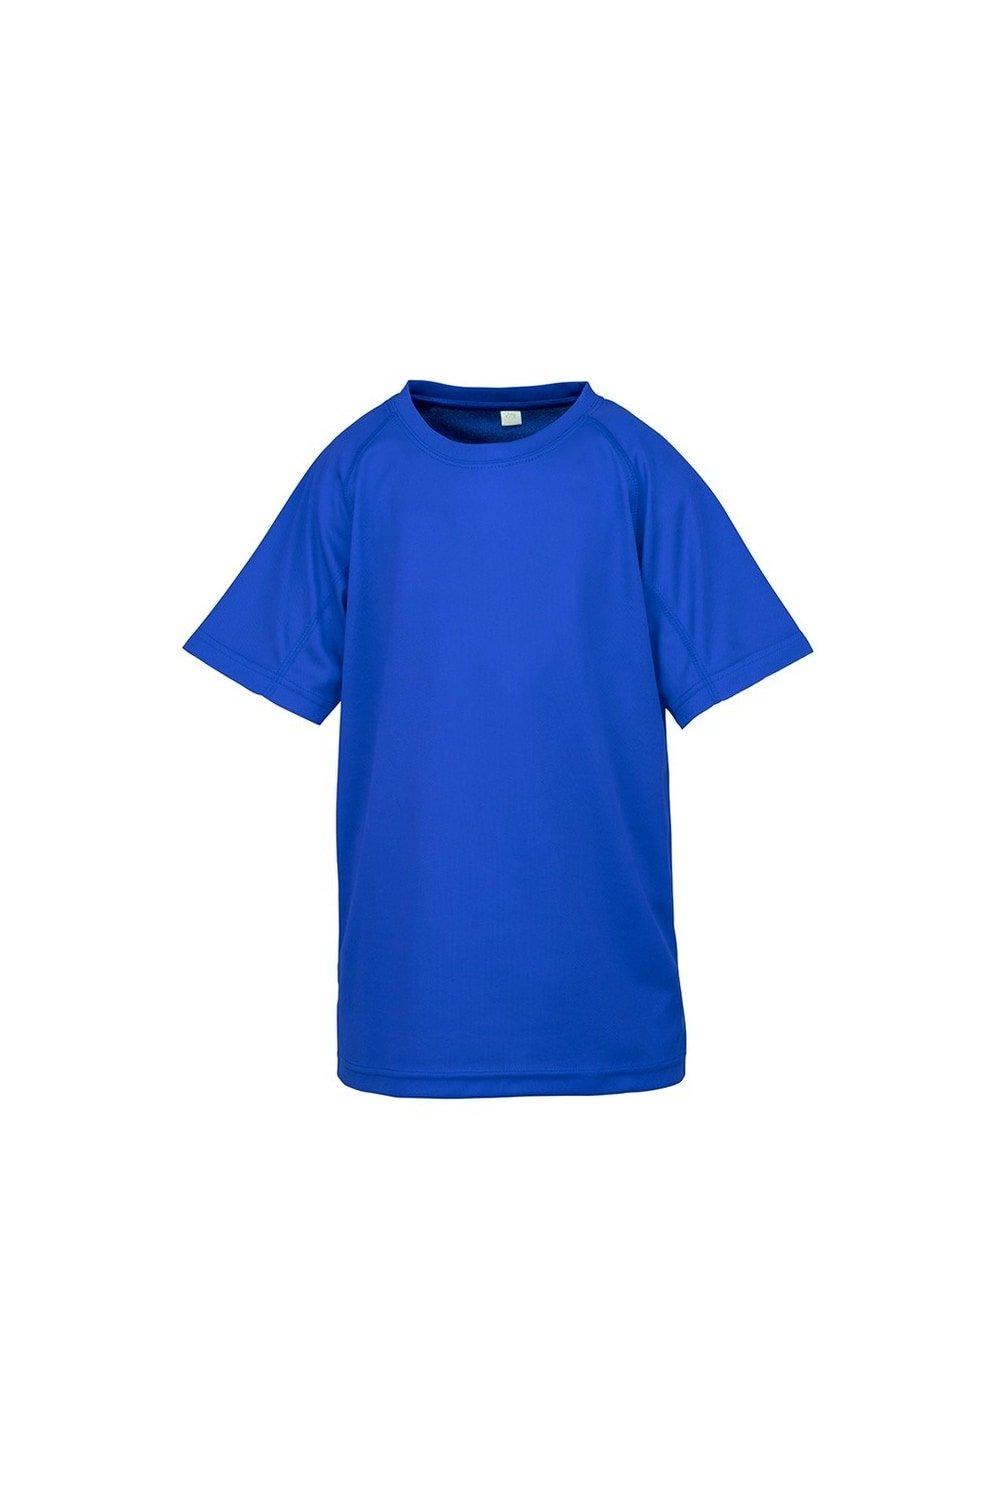 цена Детская футболка Impact Performance Aircool Spiro, синий